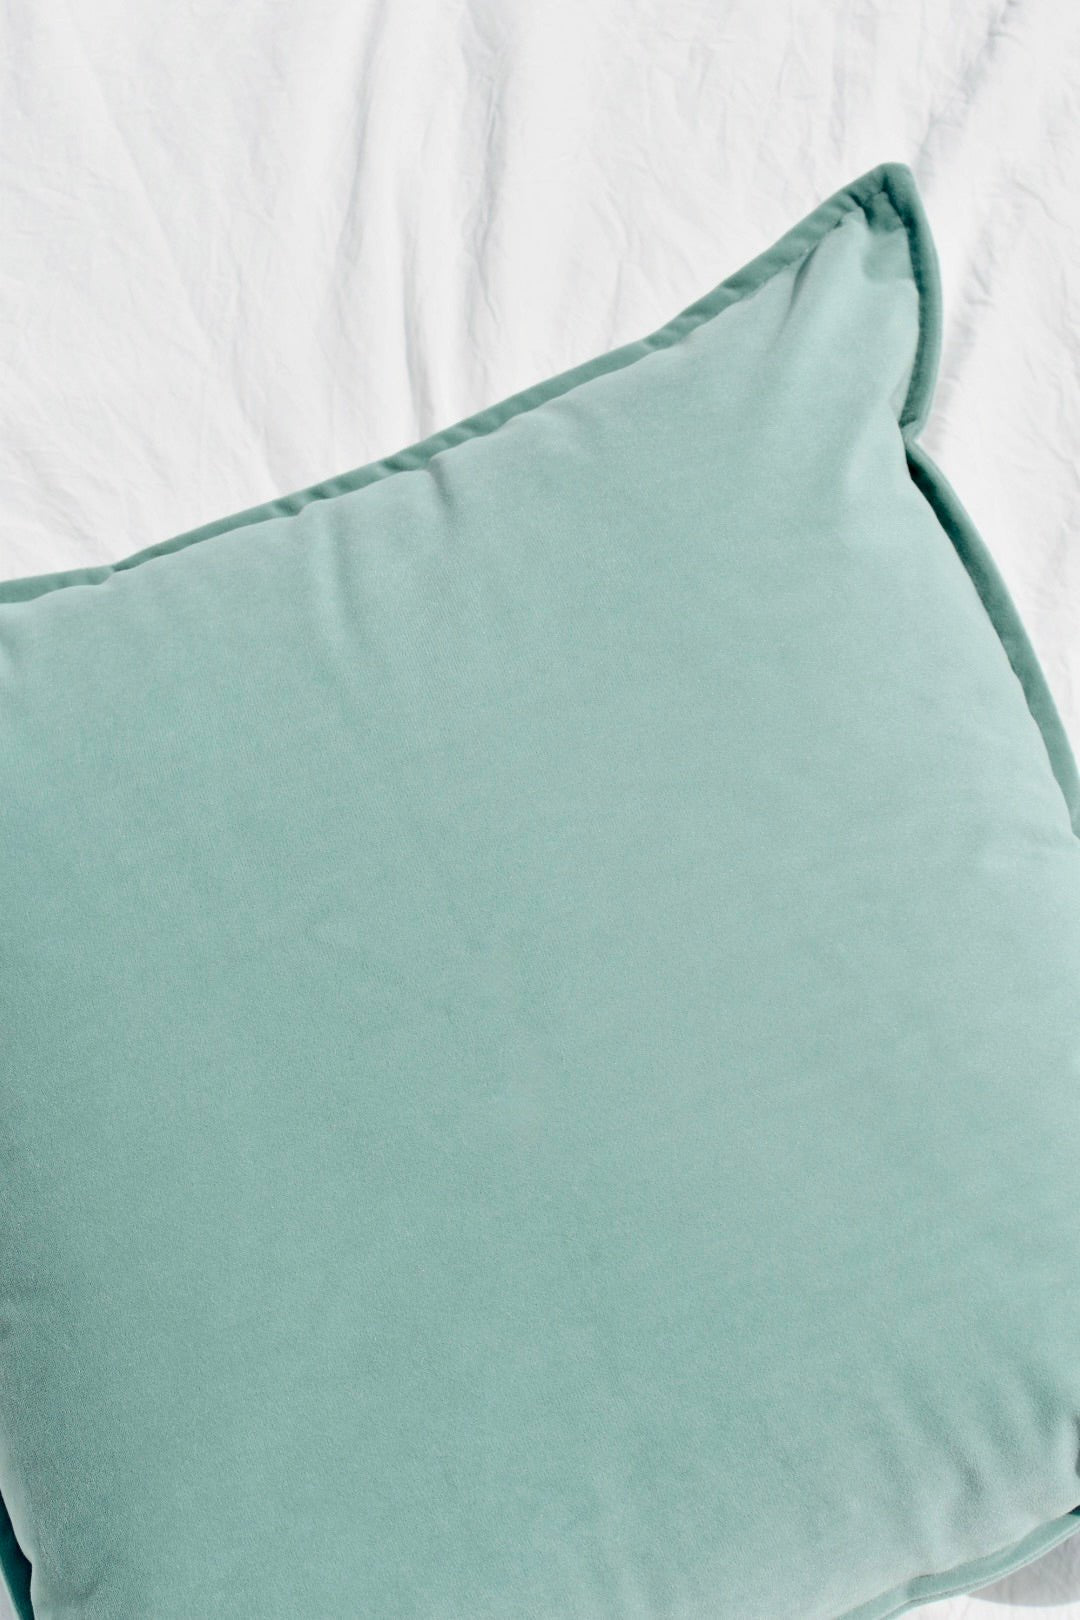 Jade Velvet Pillow Cover - Ardent Market - Ardent Market